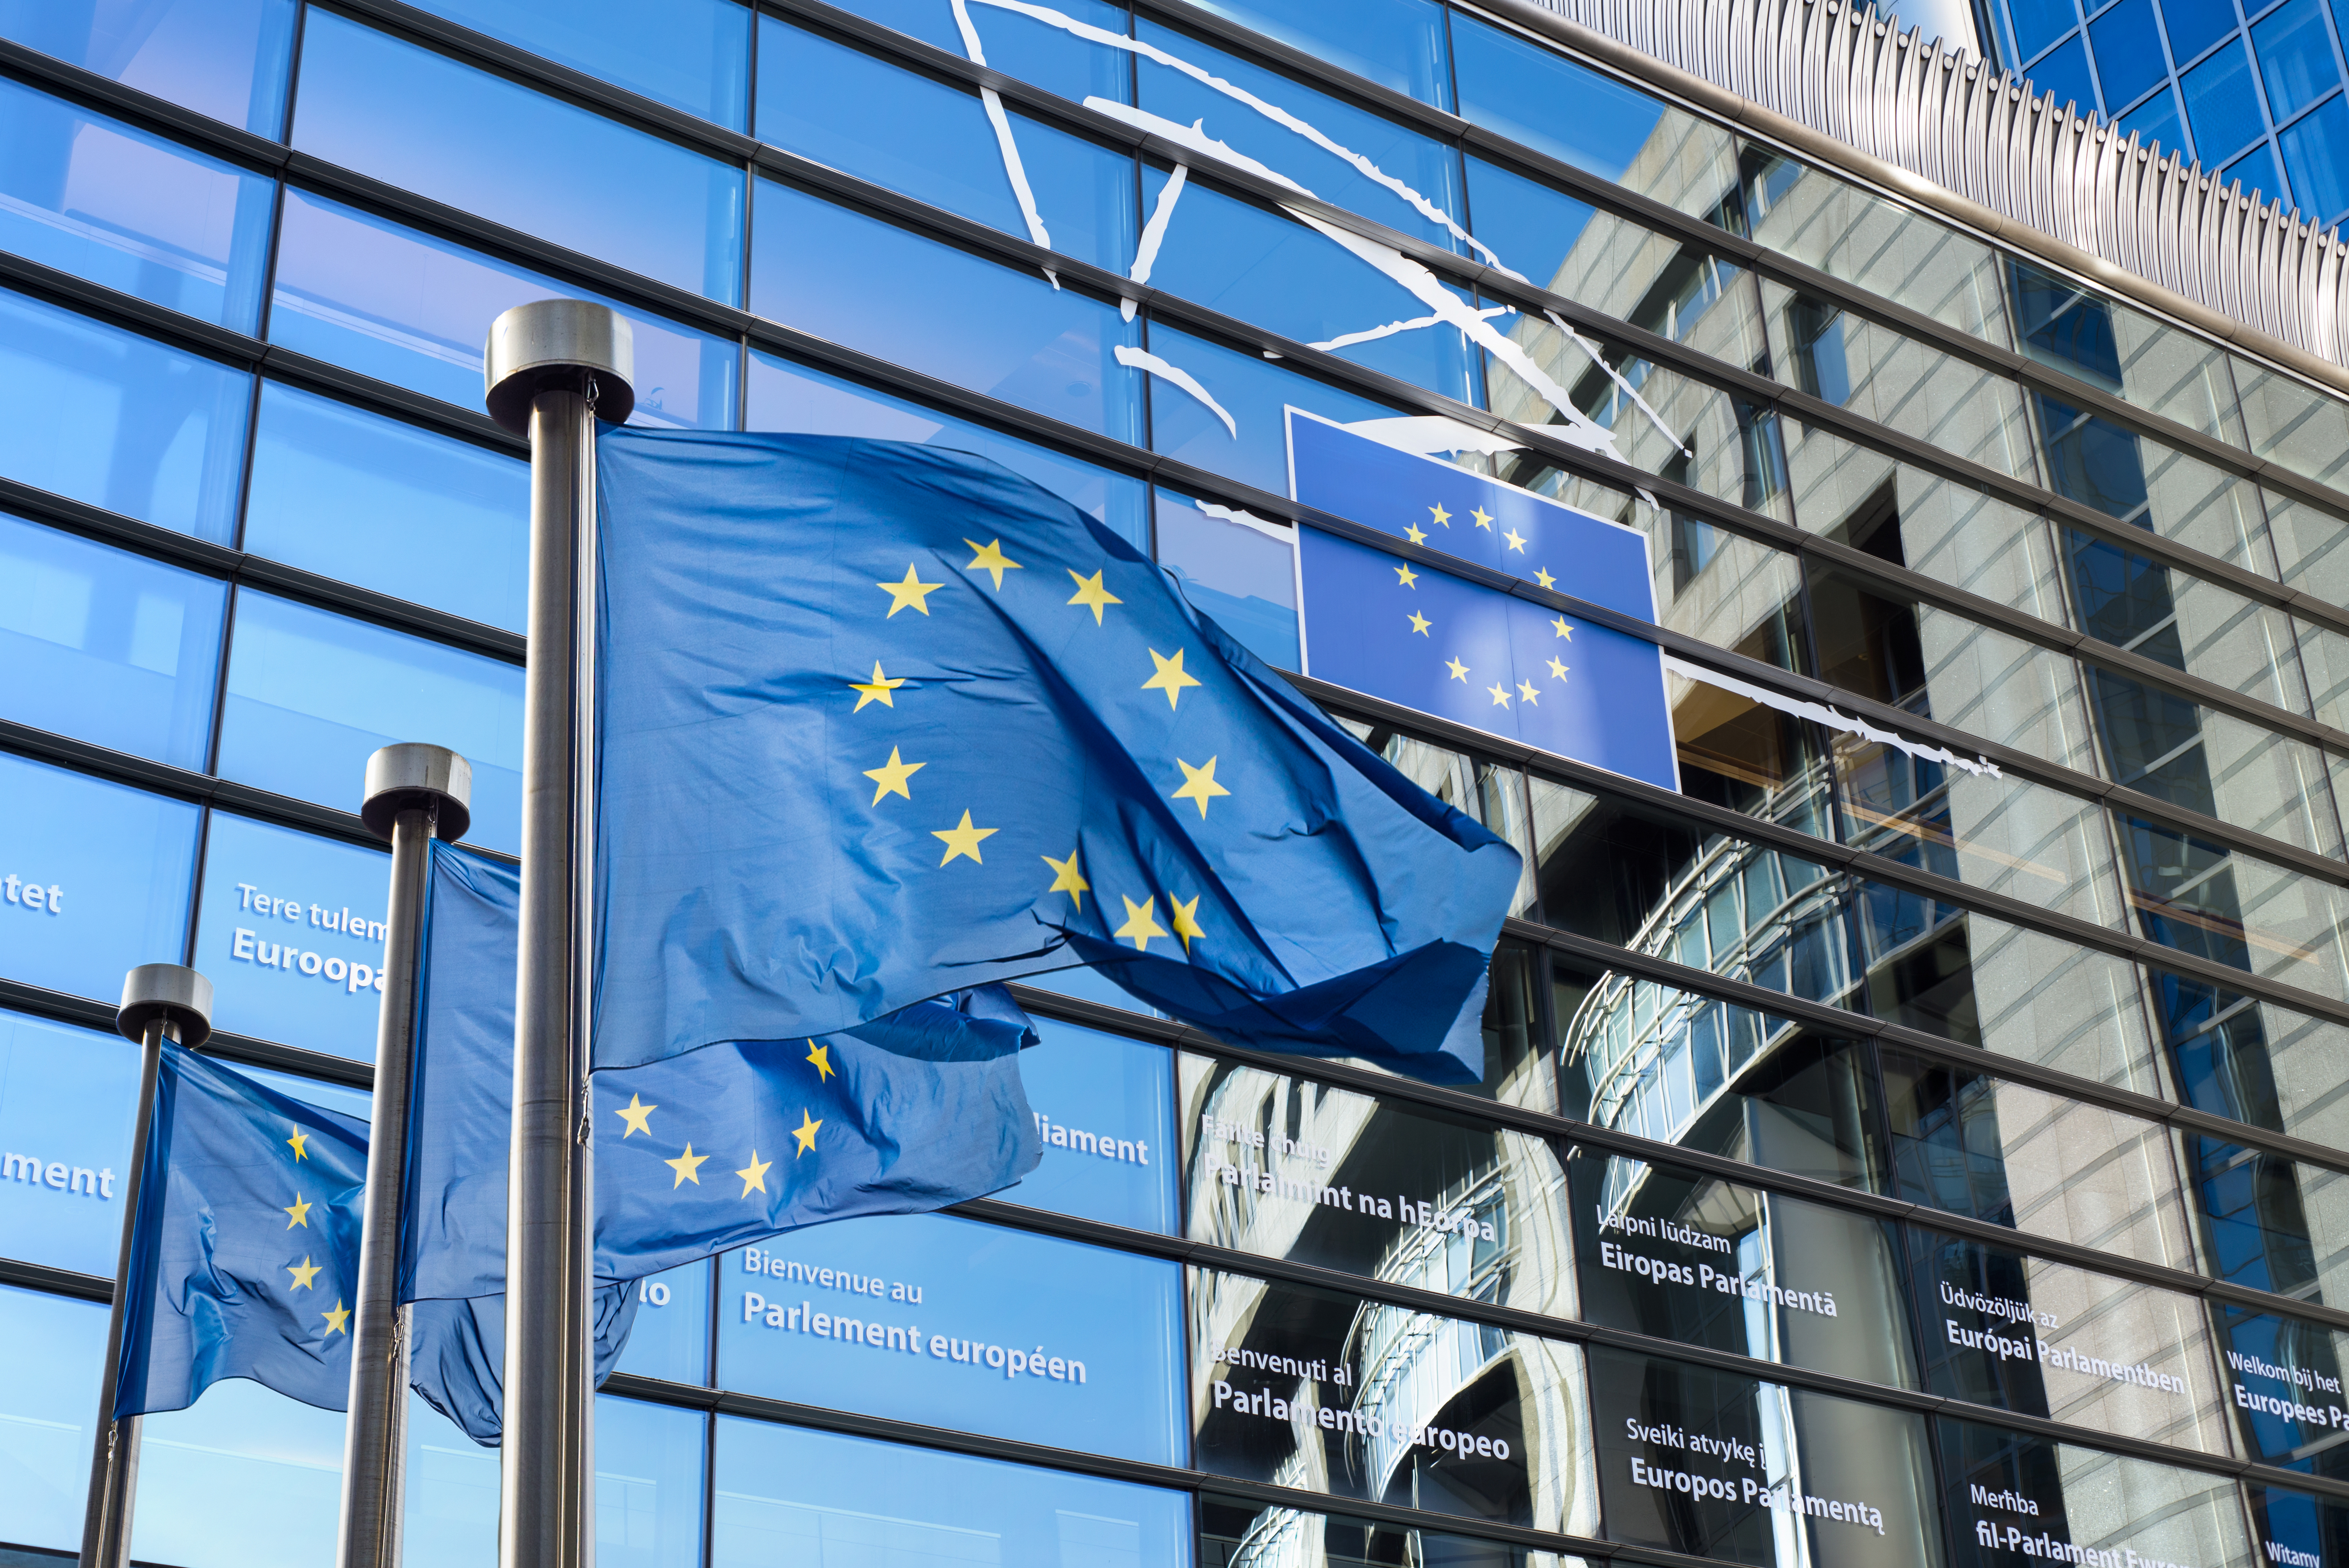 Становище 01/2022 относно предложението на Европейската комисия за регламент относно статута и финансирането на европейските политически партии и на европейските политически фондации